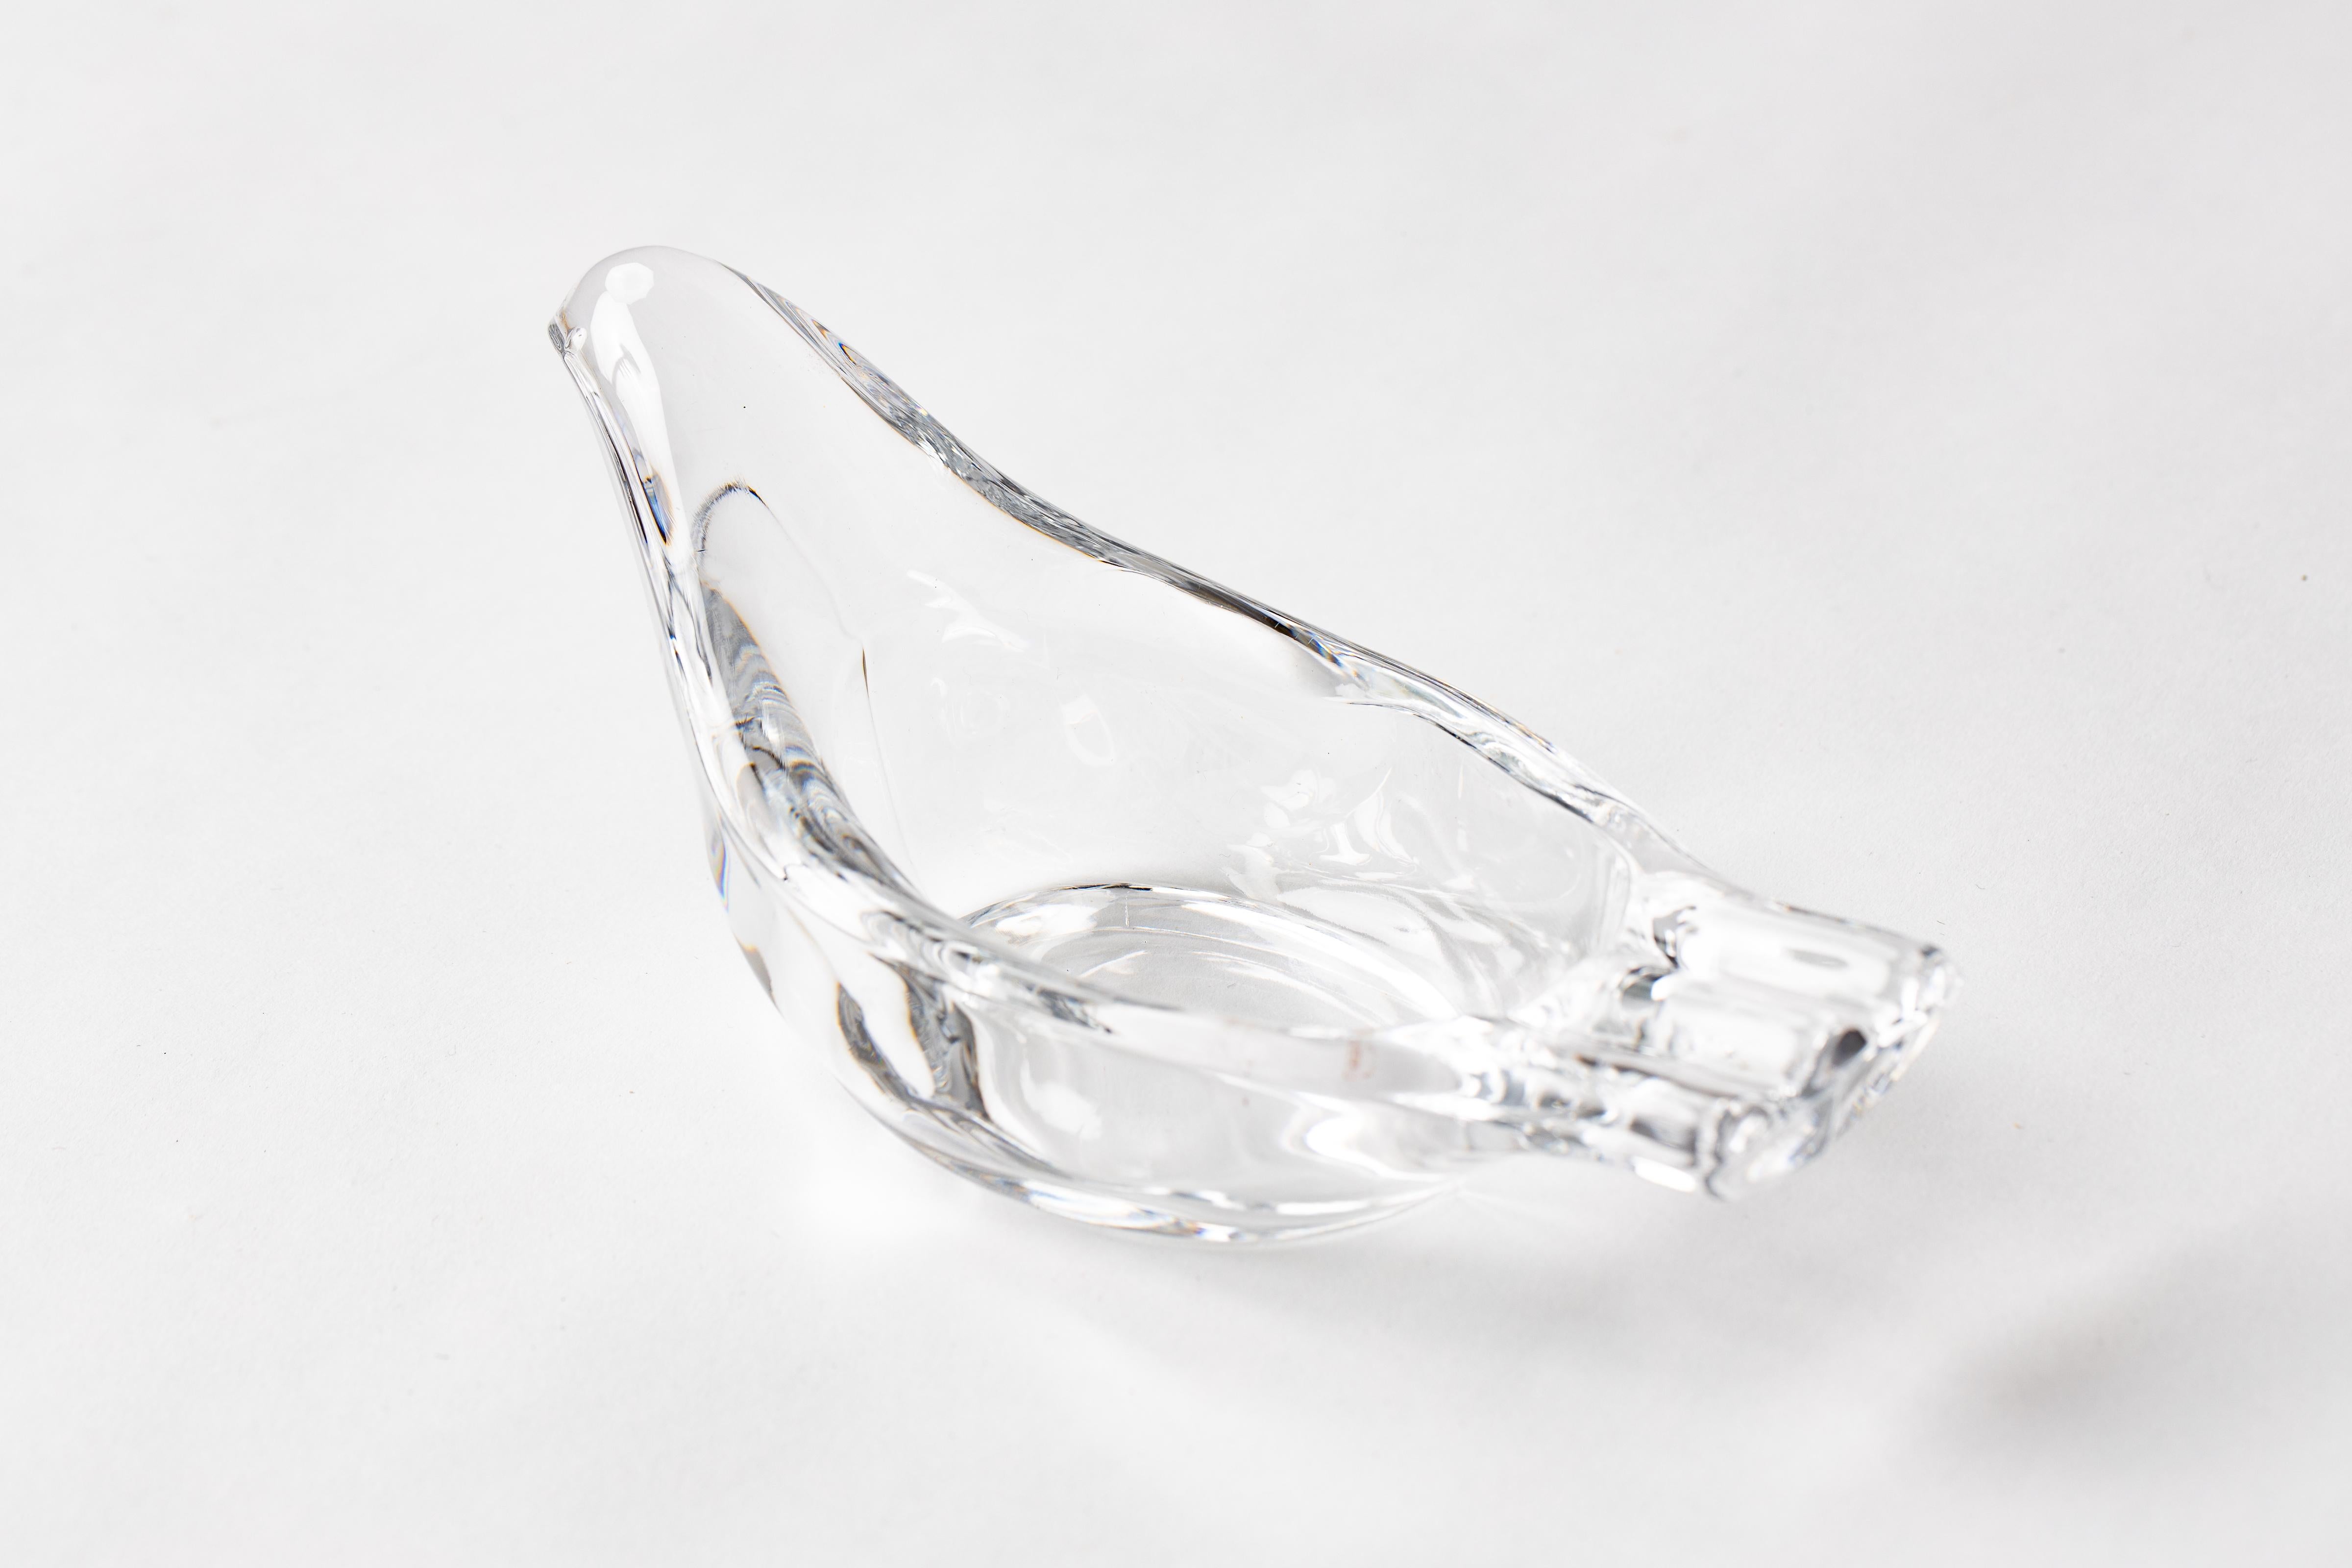 Cendrier à colombes en verre clair français des années 1960, avec des supports à l'extrémité de la queue. 
Pièce élégante à exposer comme verre d'art lorsqu'elle n'est pas utilisée.
Mesure 8